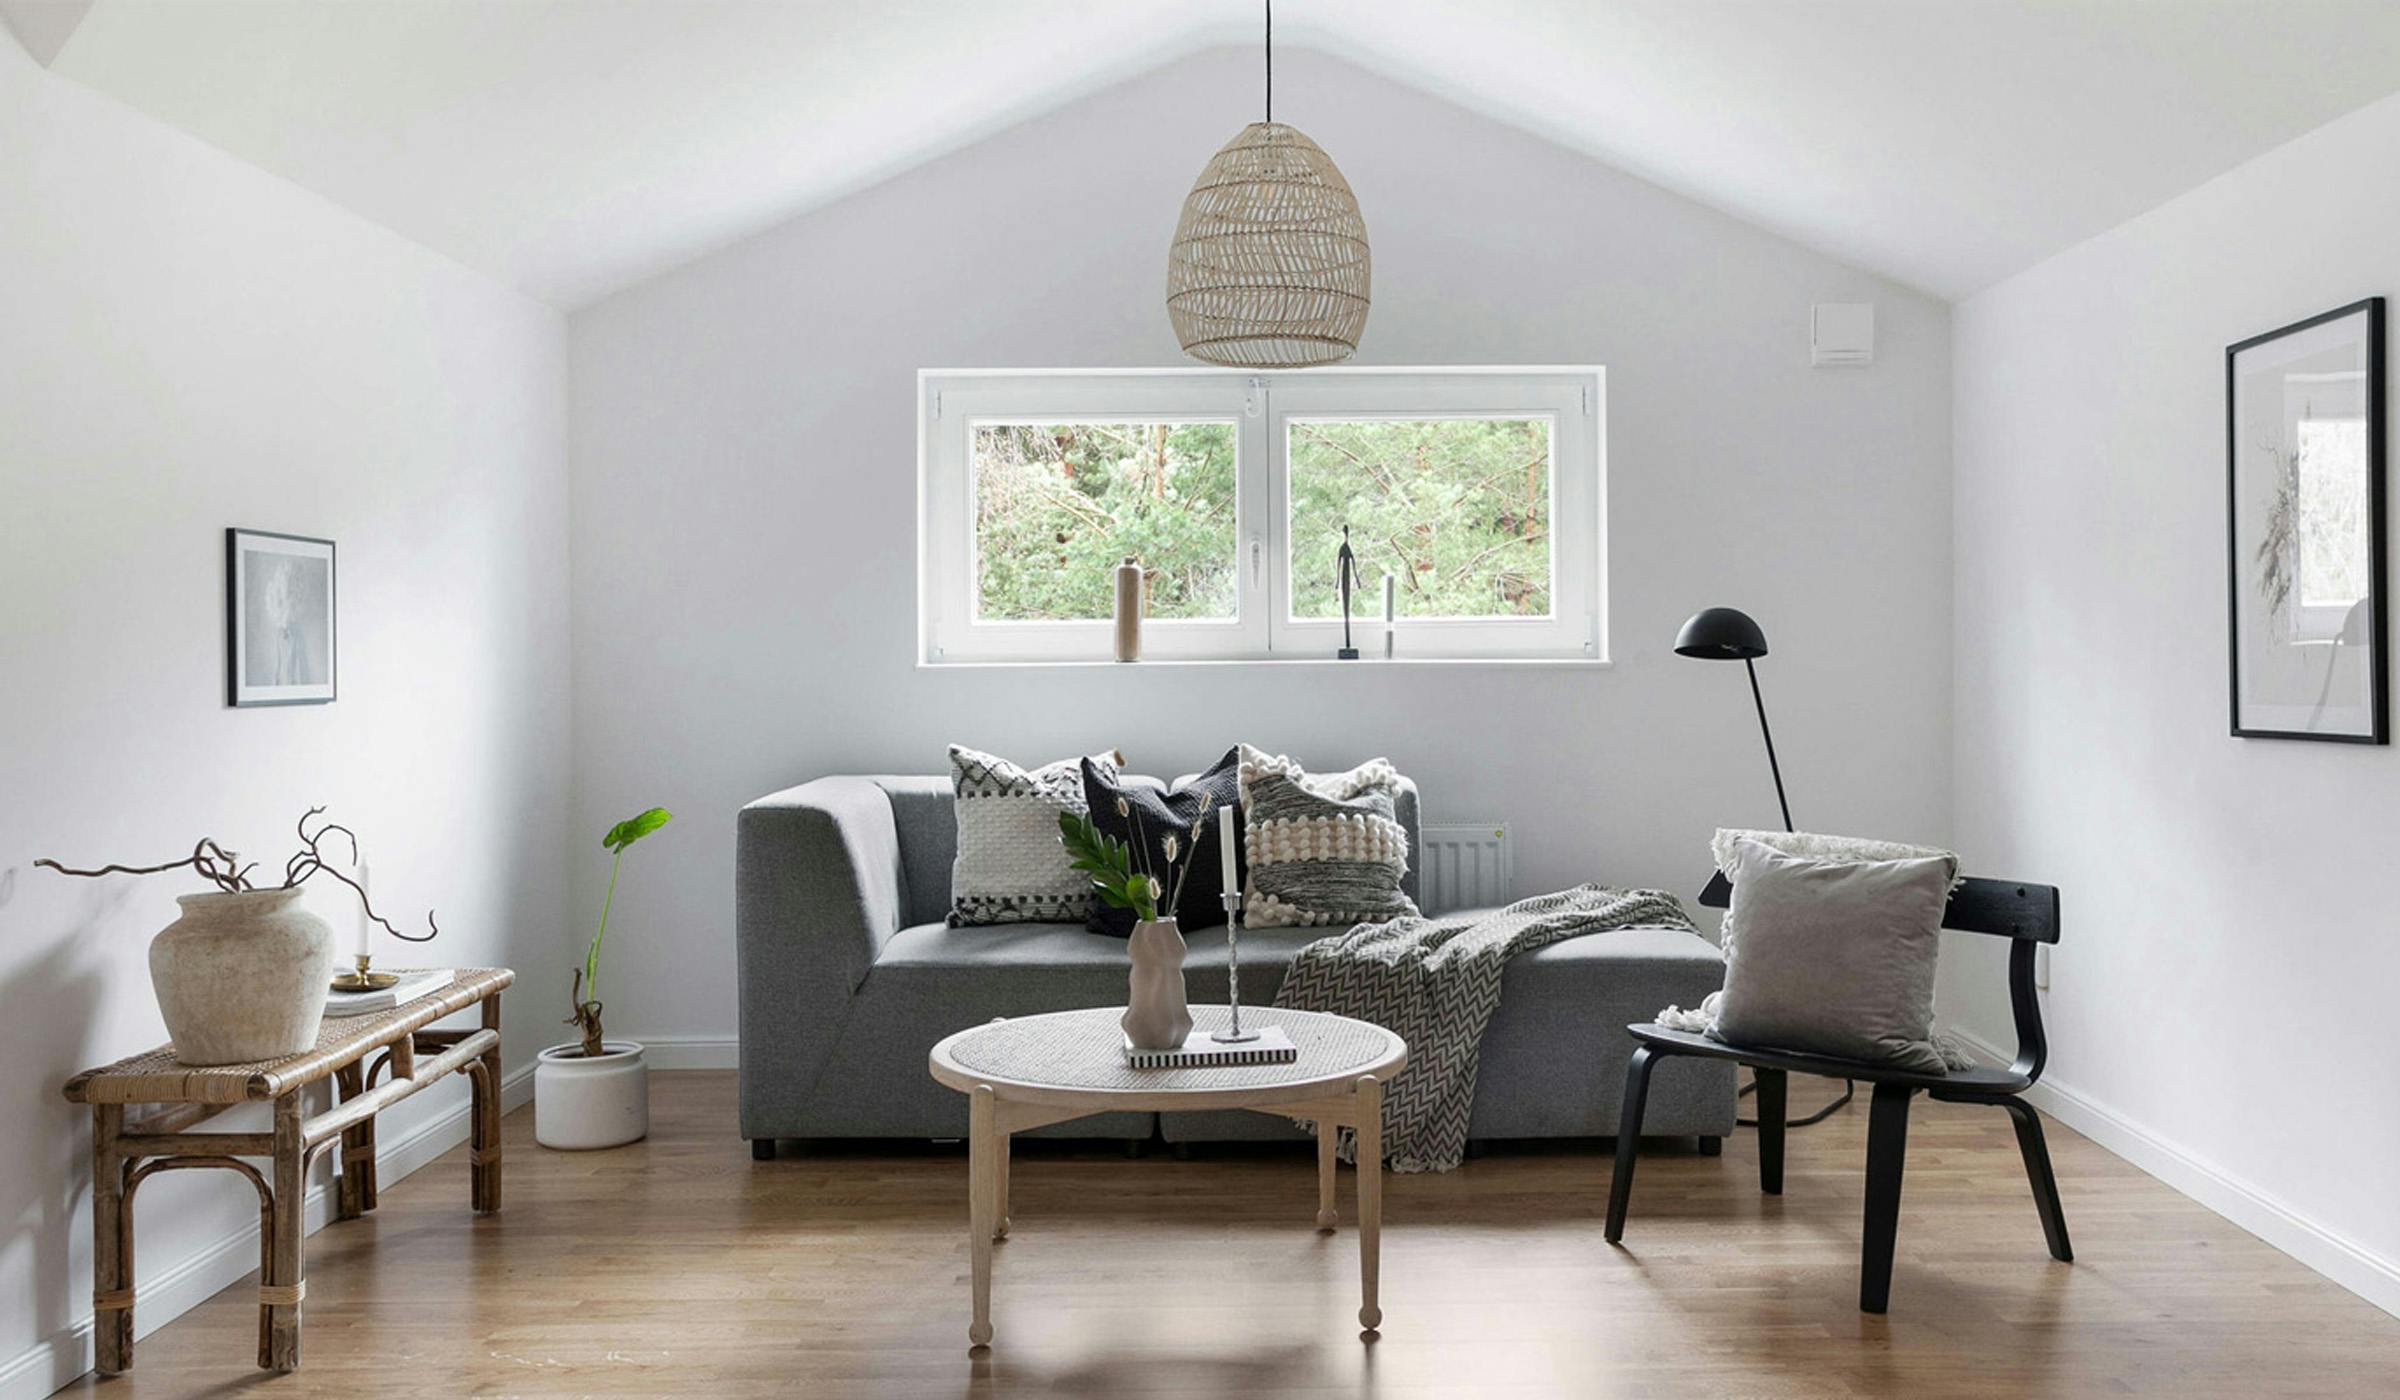 Living room minimalistic